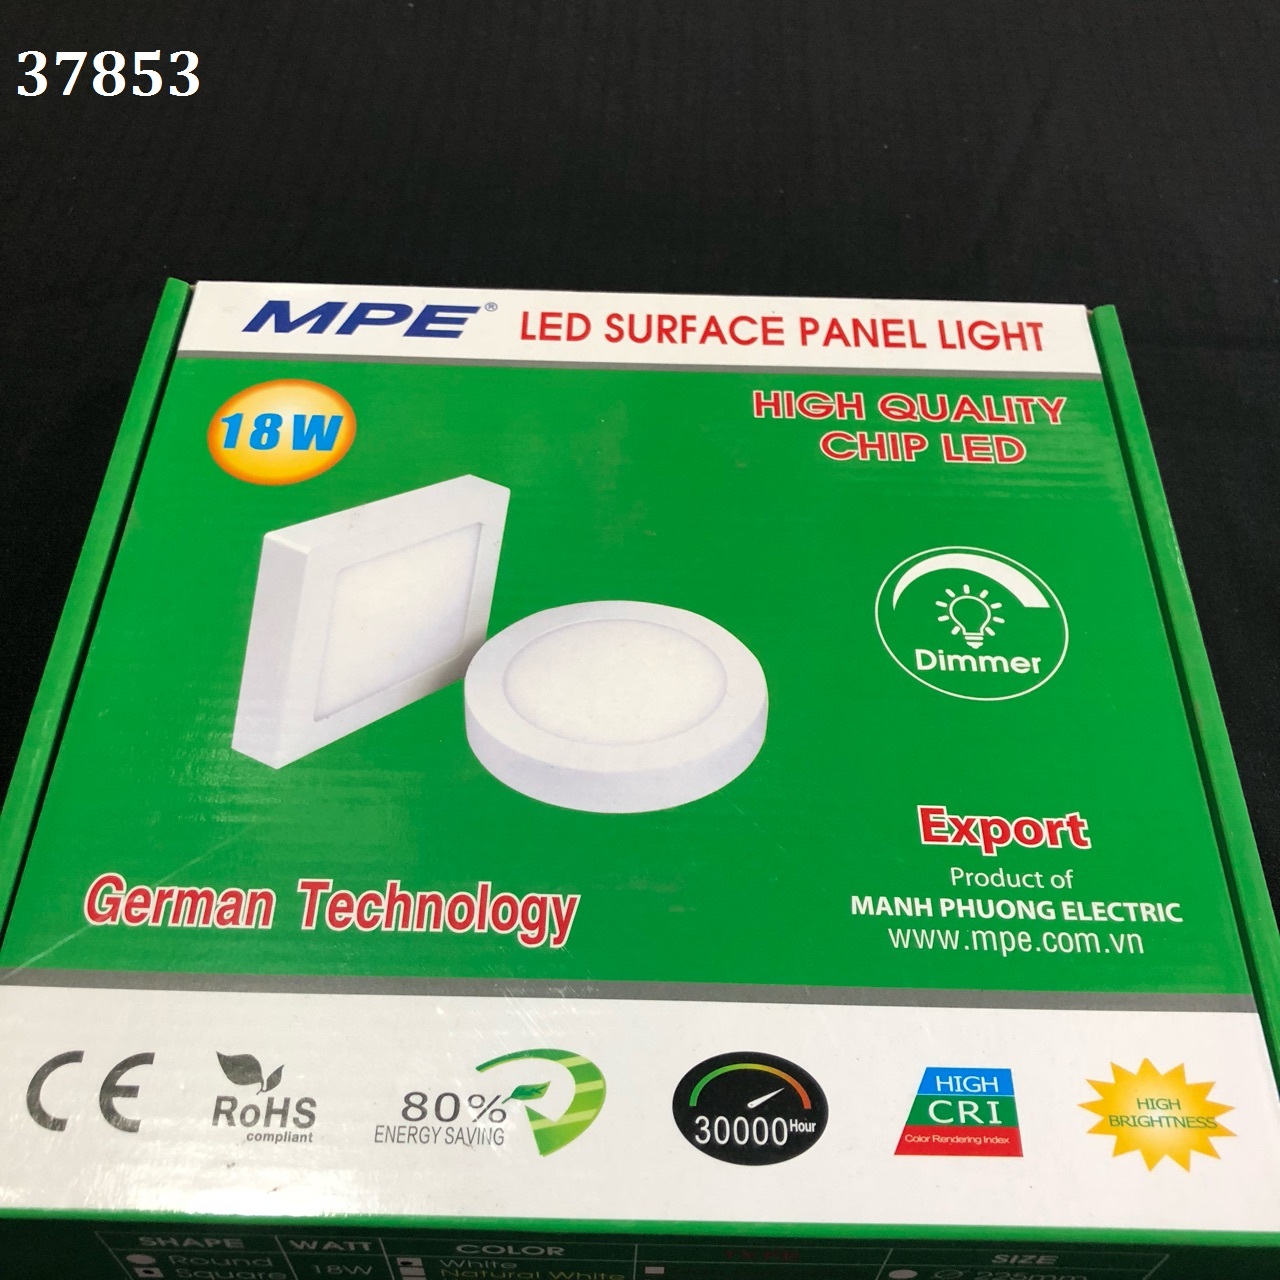 Đèn led panel ốp trần nổi vuông 18W MPE SSPL-18T, ánh sáng trắng, kích thước 217x217x35 mm, đóng gói 1 cái /hộp - 20 hộp /thùng